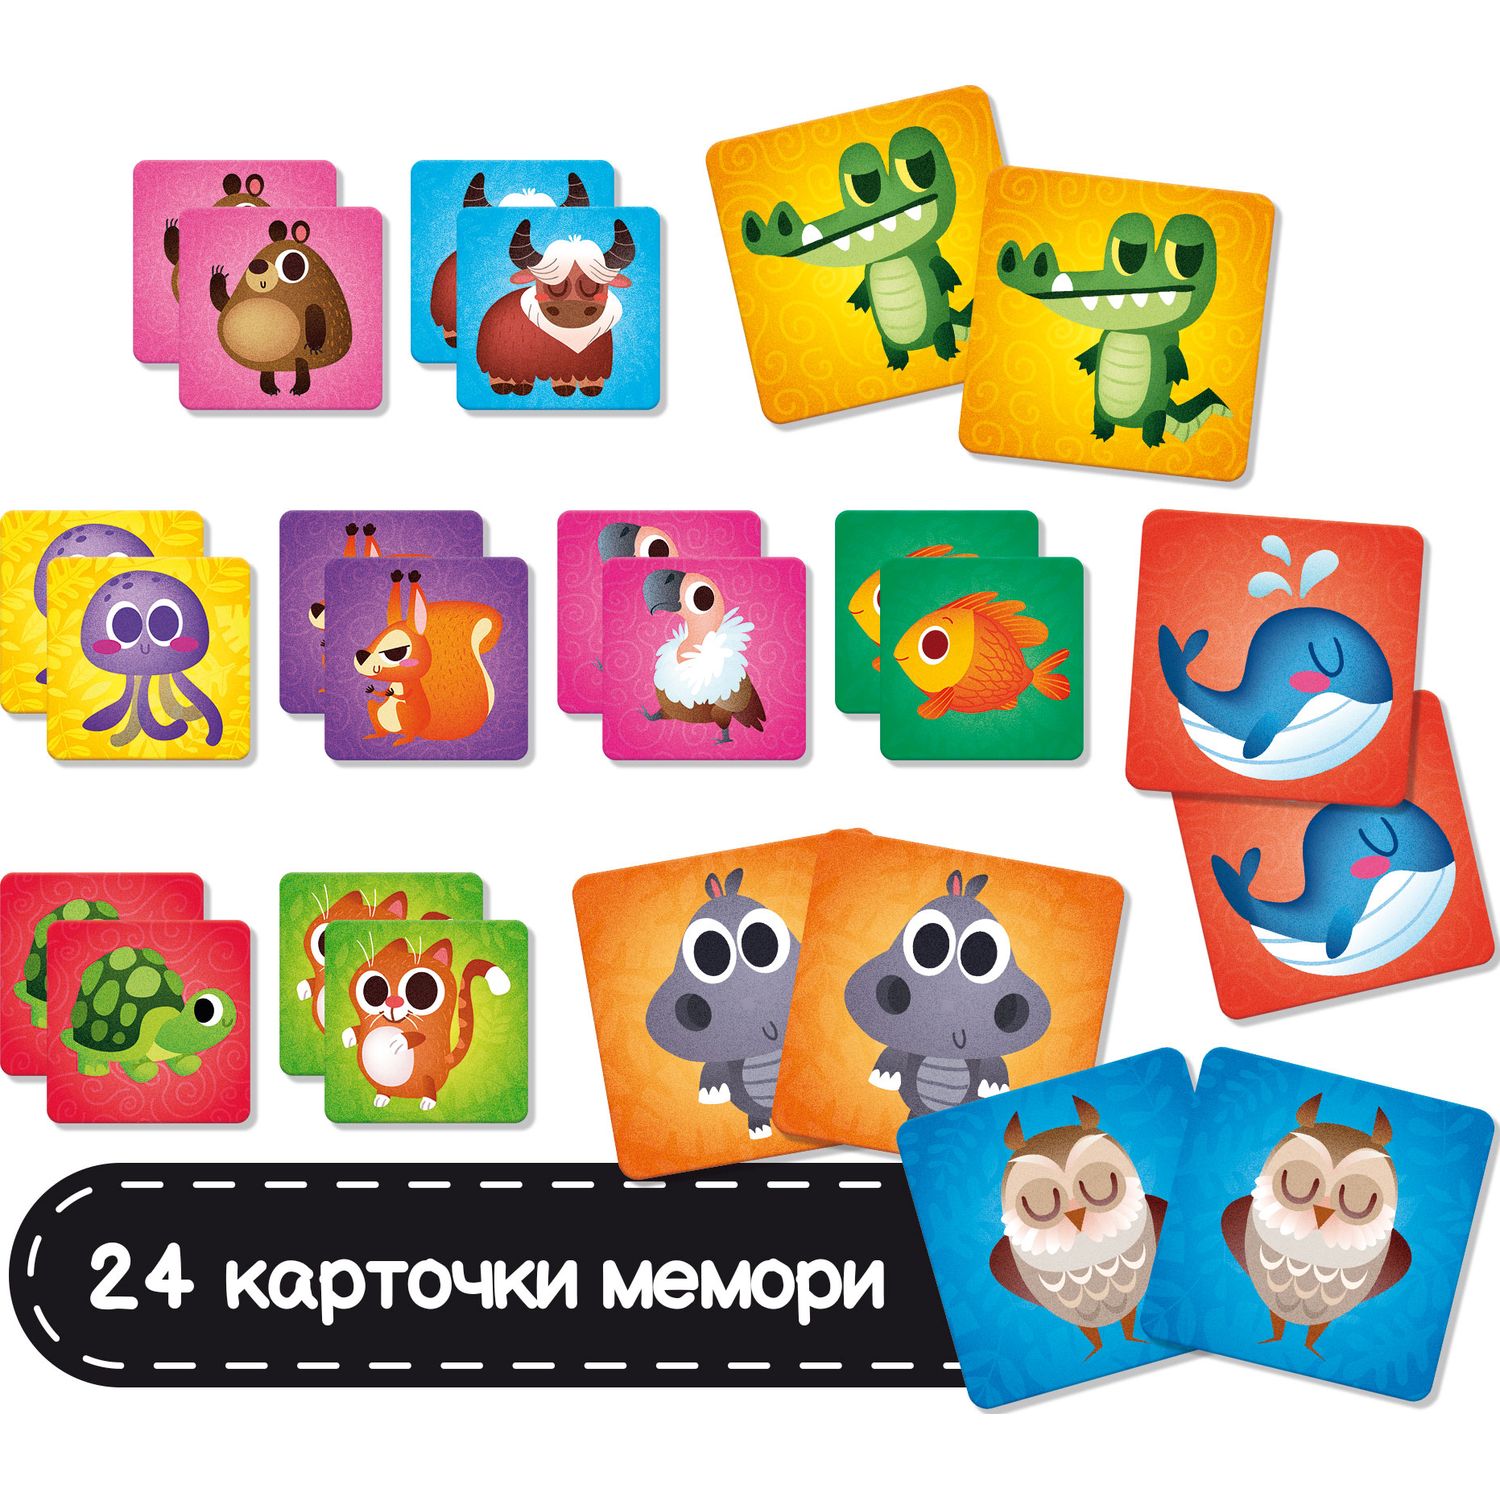 Игра развивающая Lisciani Montessori baby Touch memo R92703 - фото 5